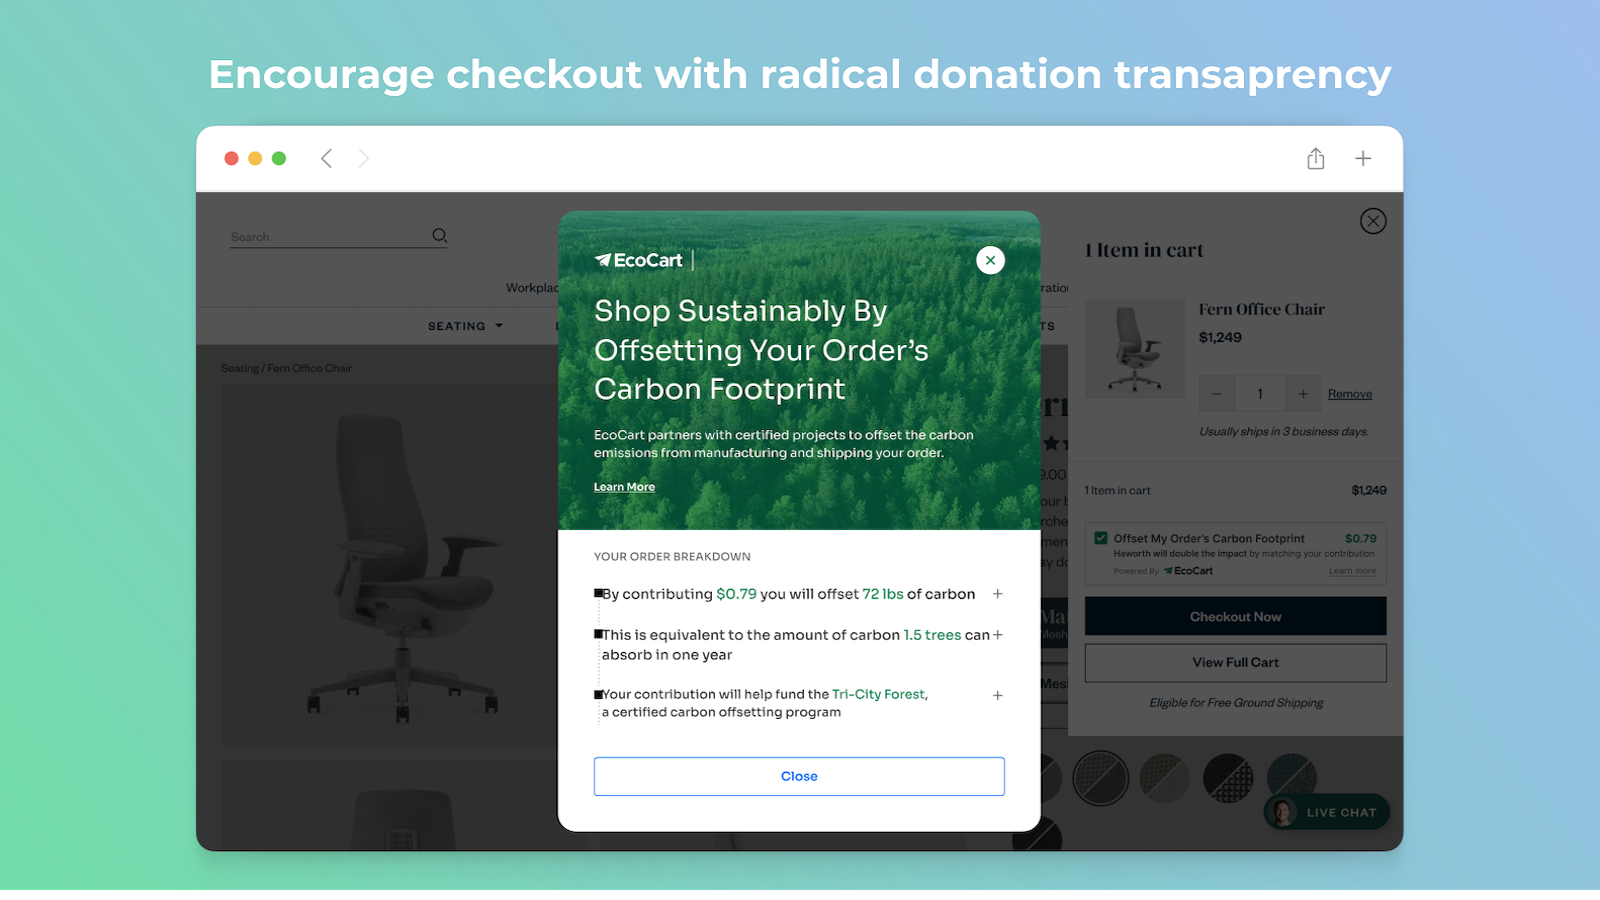 Moedig afrekenen aan met radicale transparantie in donaties